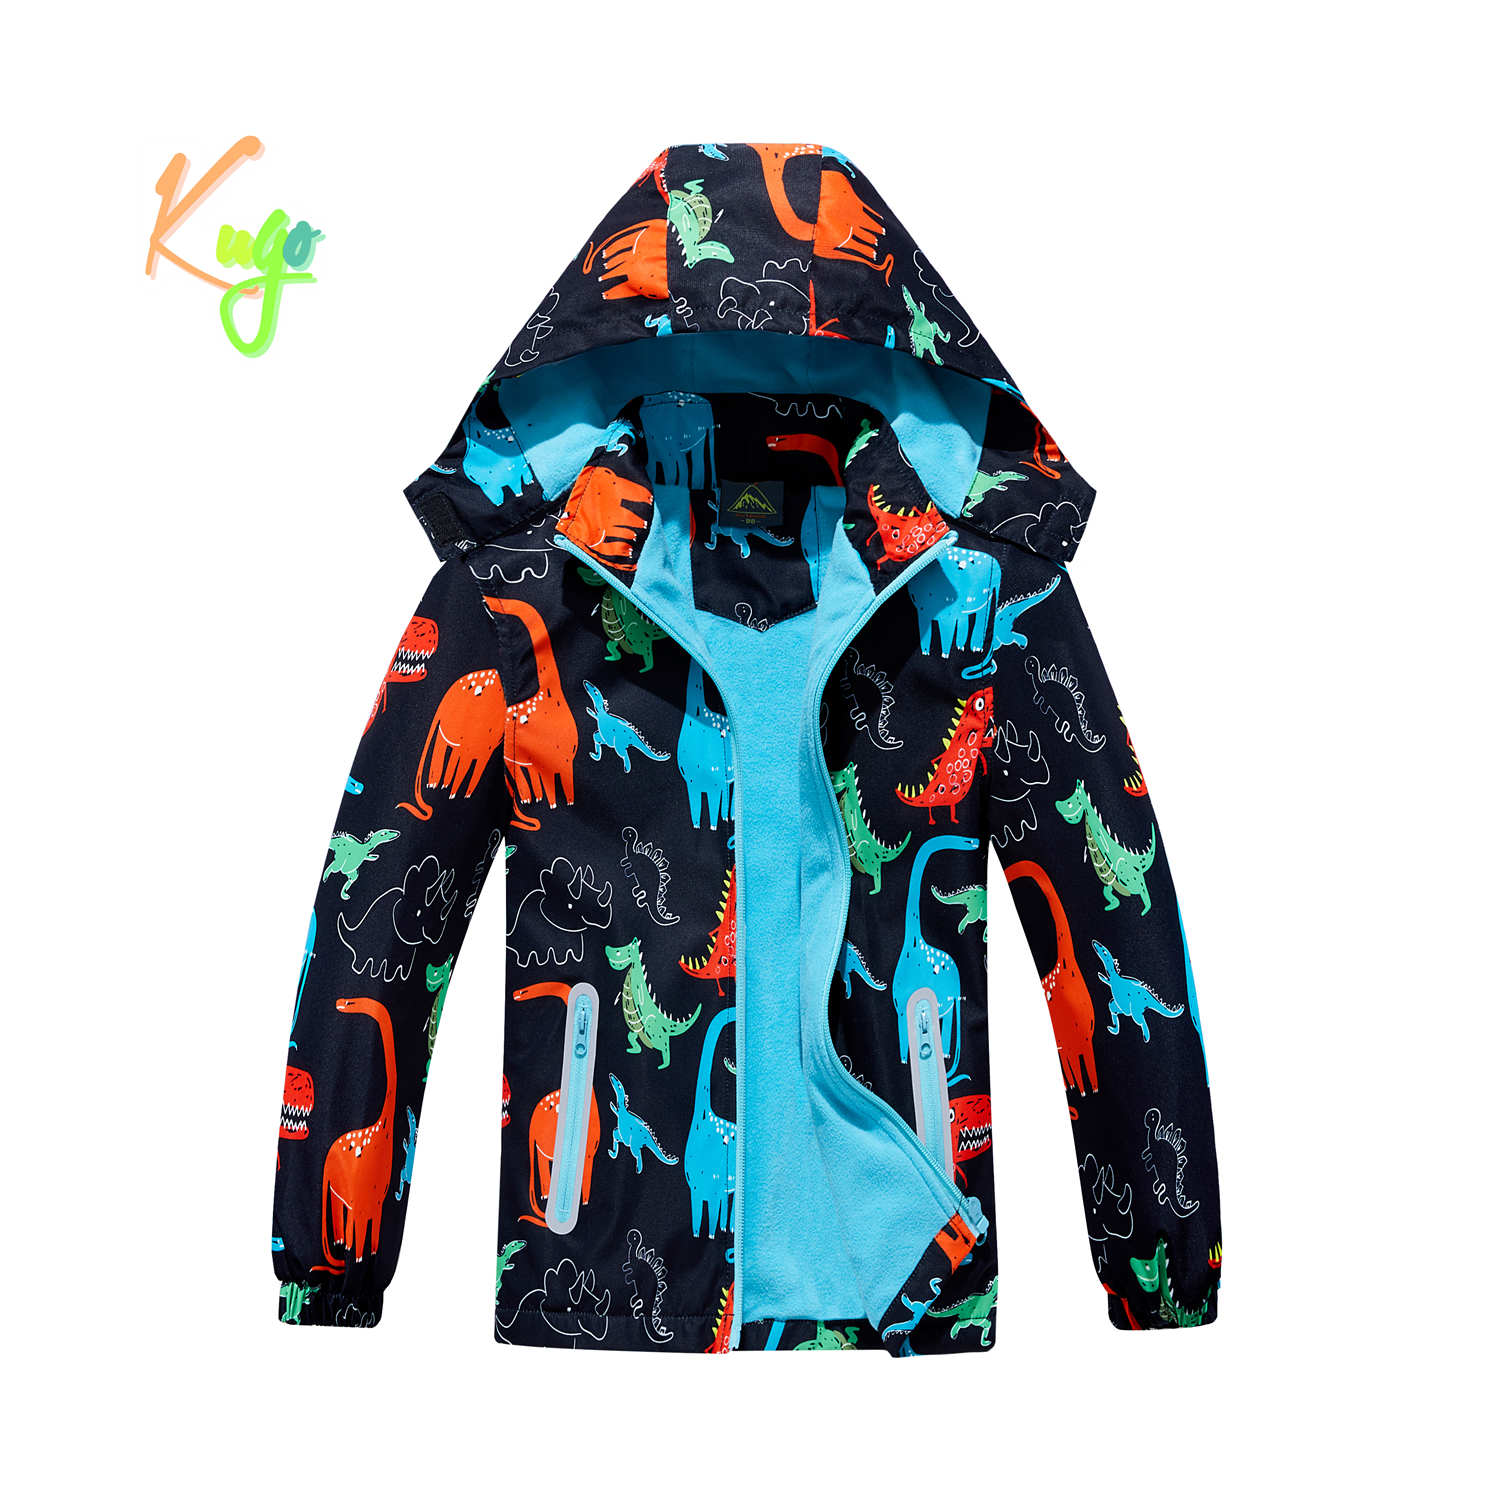 Chlapecká podzimní bunda, zateplená - KUGO B2857, černá, dinosauři Barva: Černá, Velikost: 98